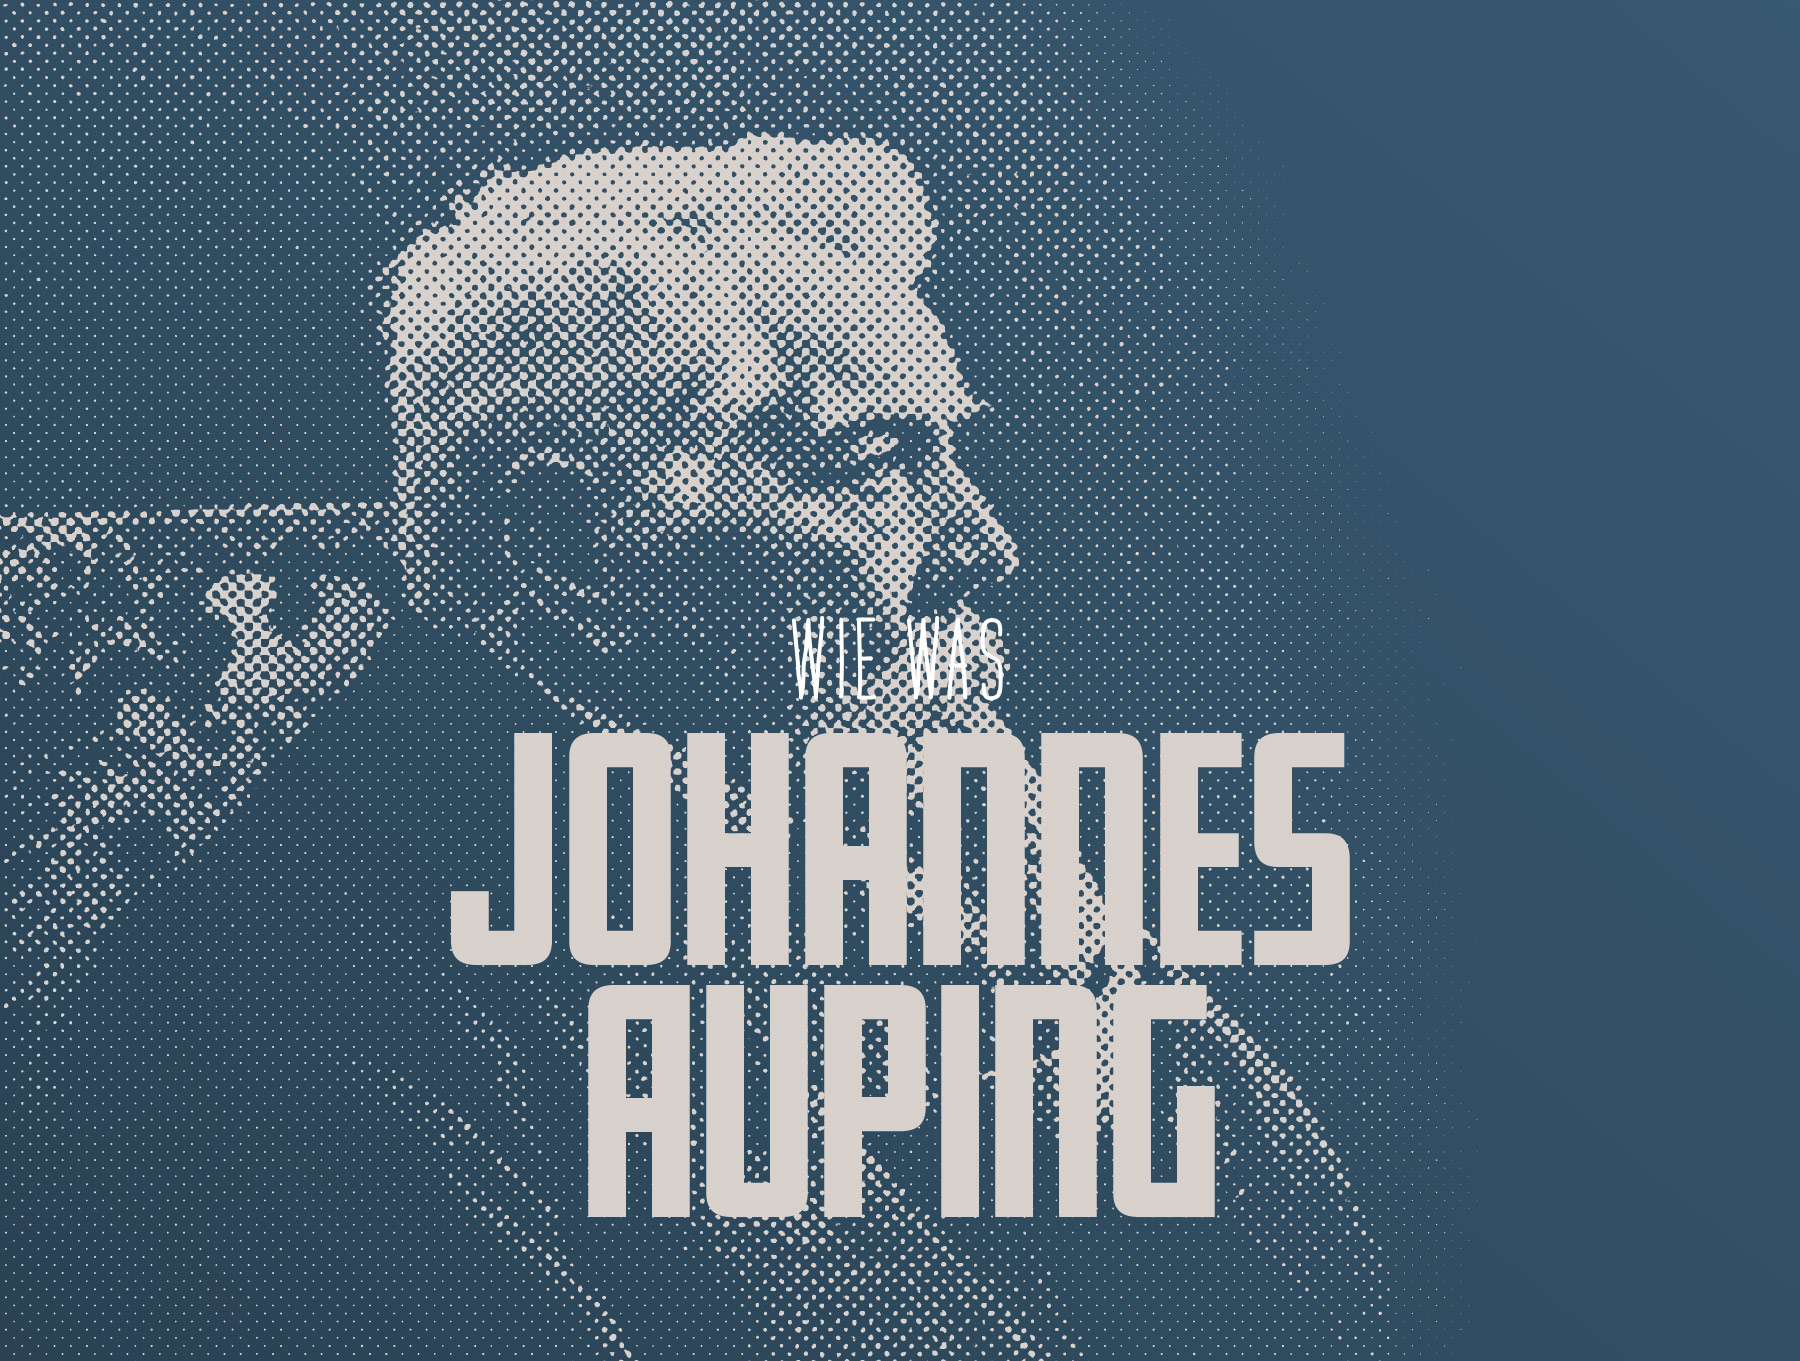 Wie was Johannes Auping?